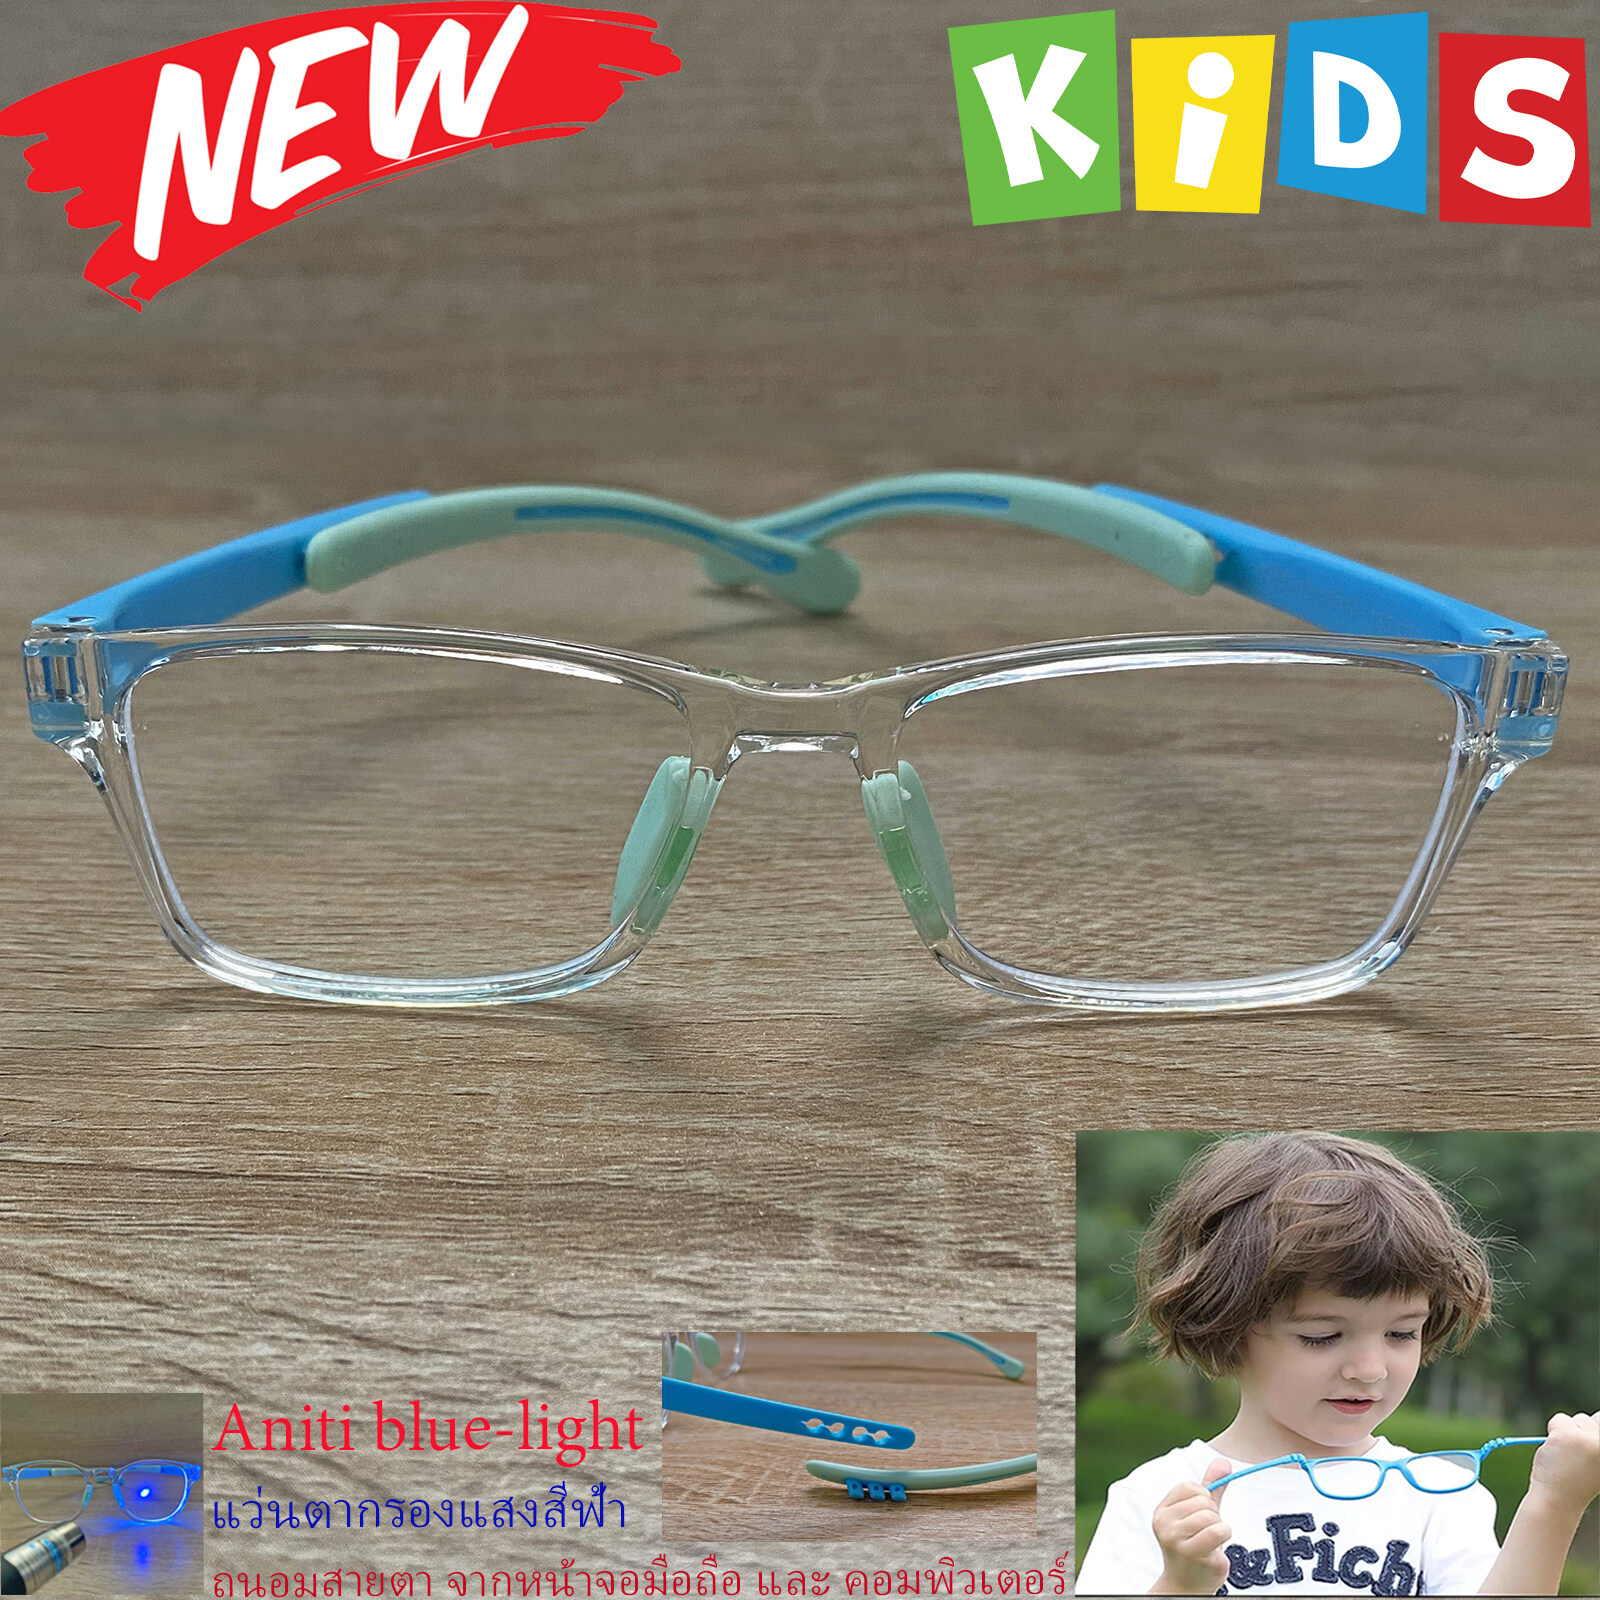 แว่นตาเด็กกรองแสง สีฟ้า blue block กรอบแว่นเด็ก บลูบล็อค รุ่น 02 ขาข้อต่อยืดหยุ่น ขาปรับระดับได้ วัสดุTR90 เหมาะสำหรับเลนส์สายตา